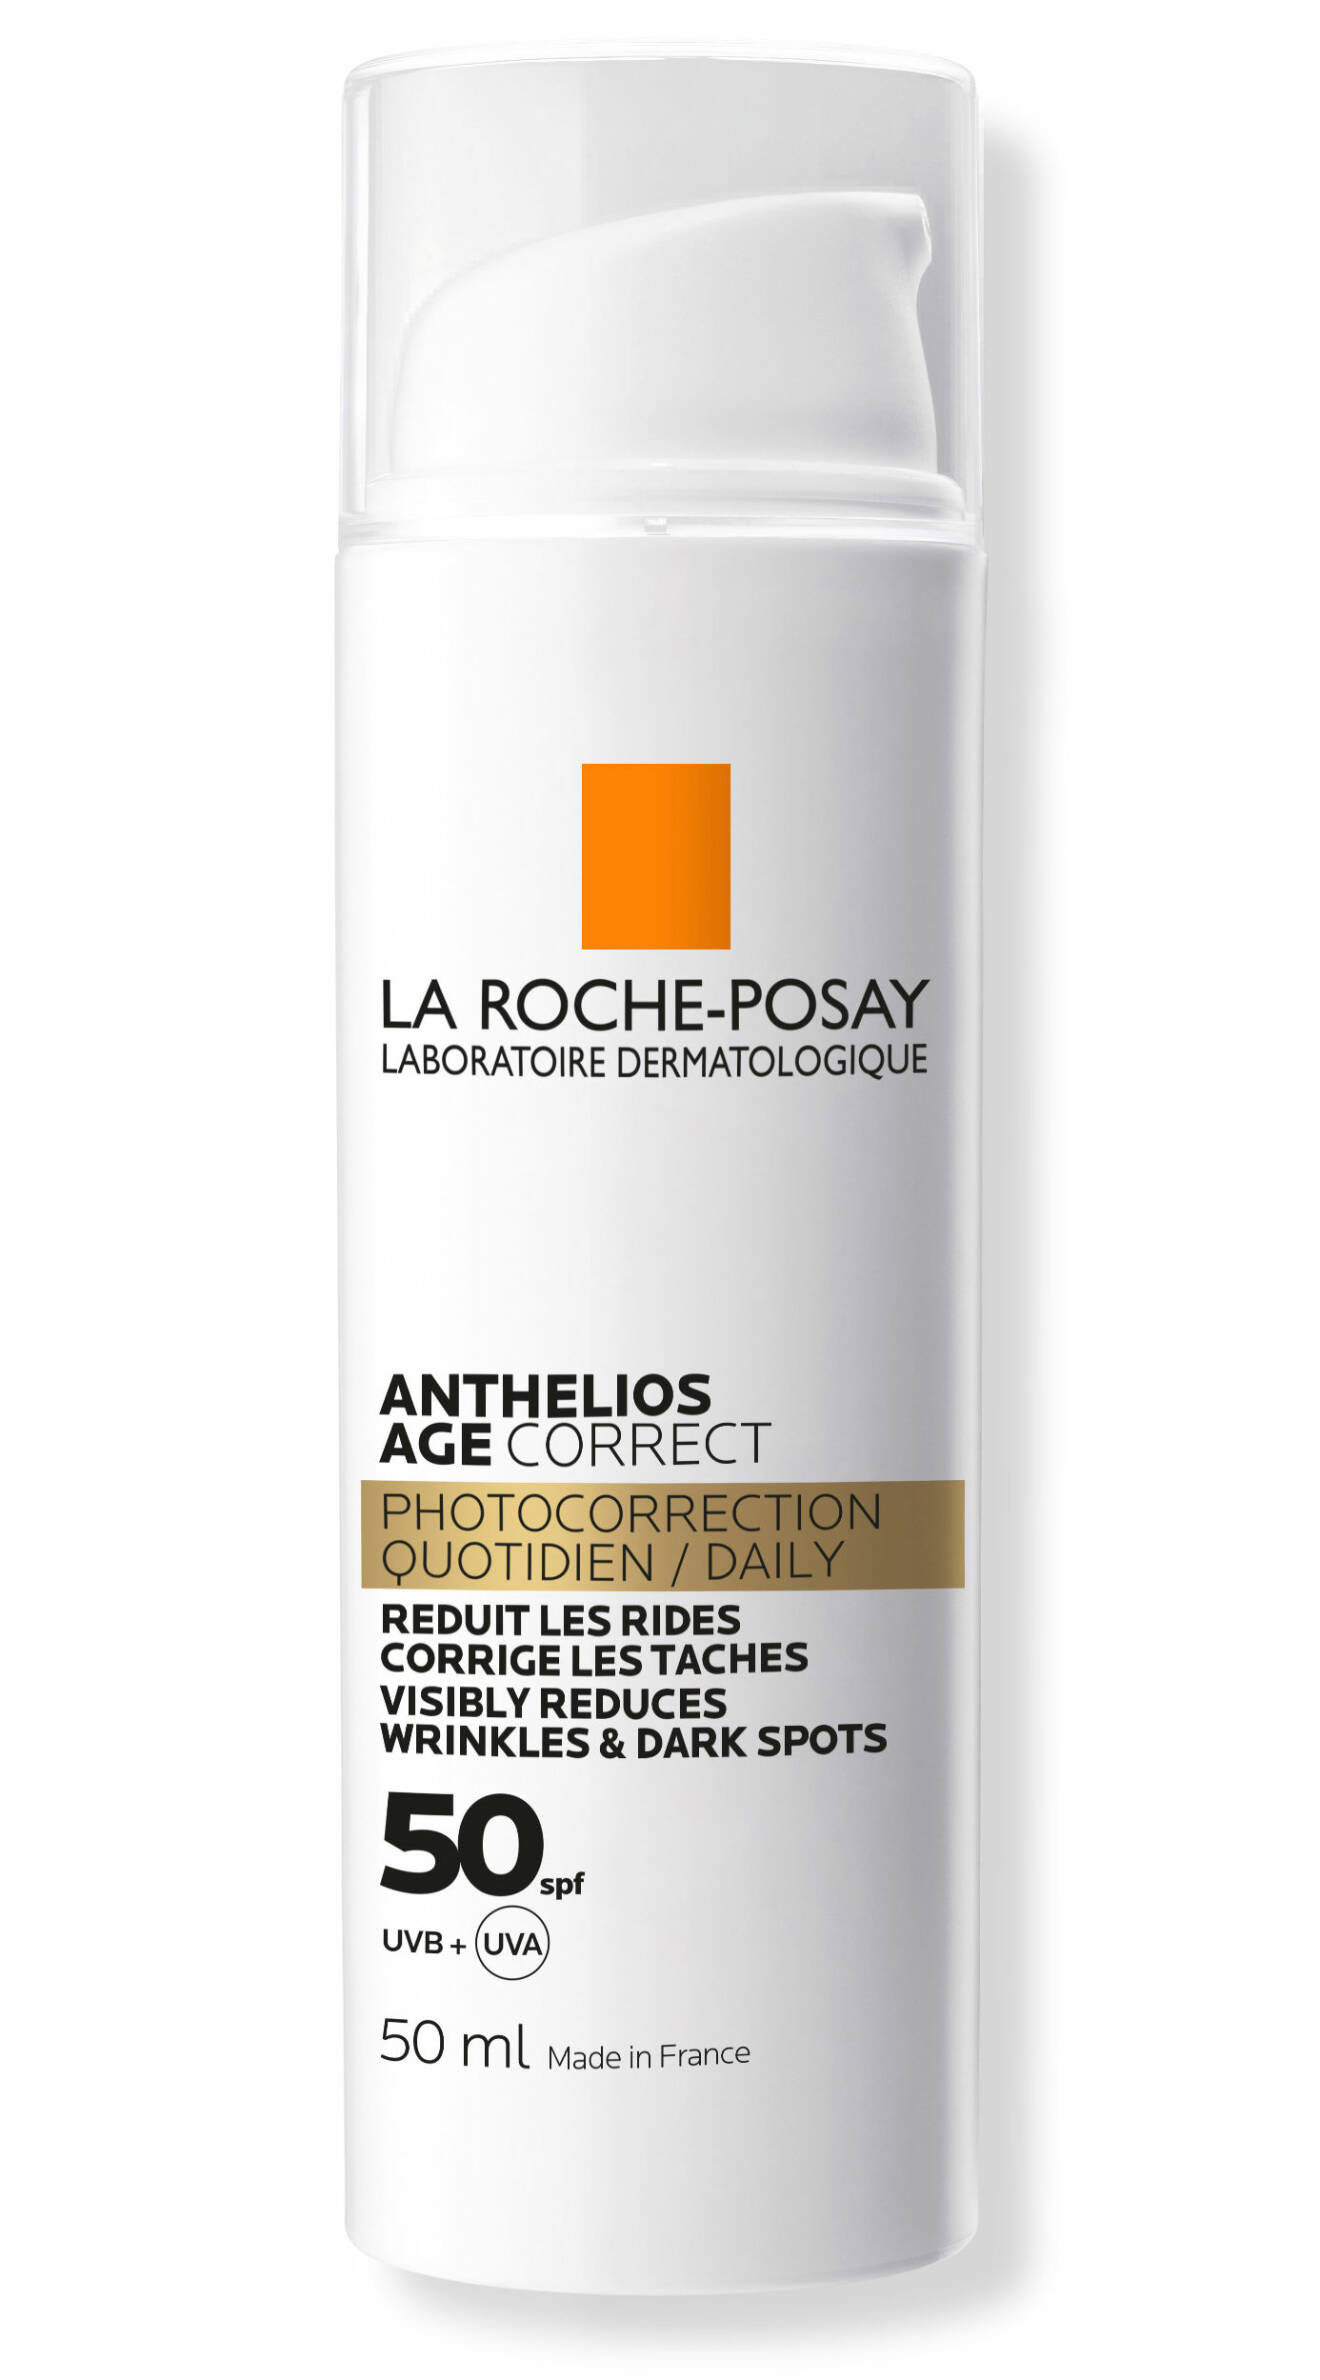 Anthelios Age Correct SPF 50 från La Roche-Posay